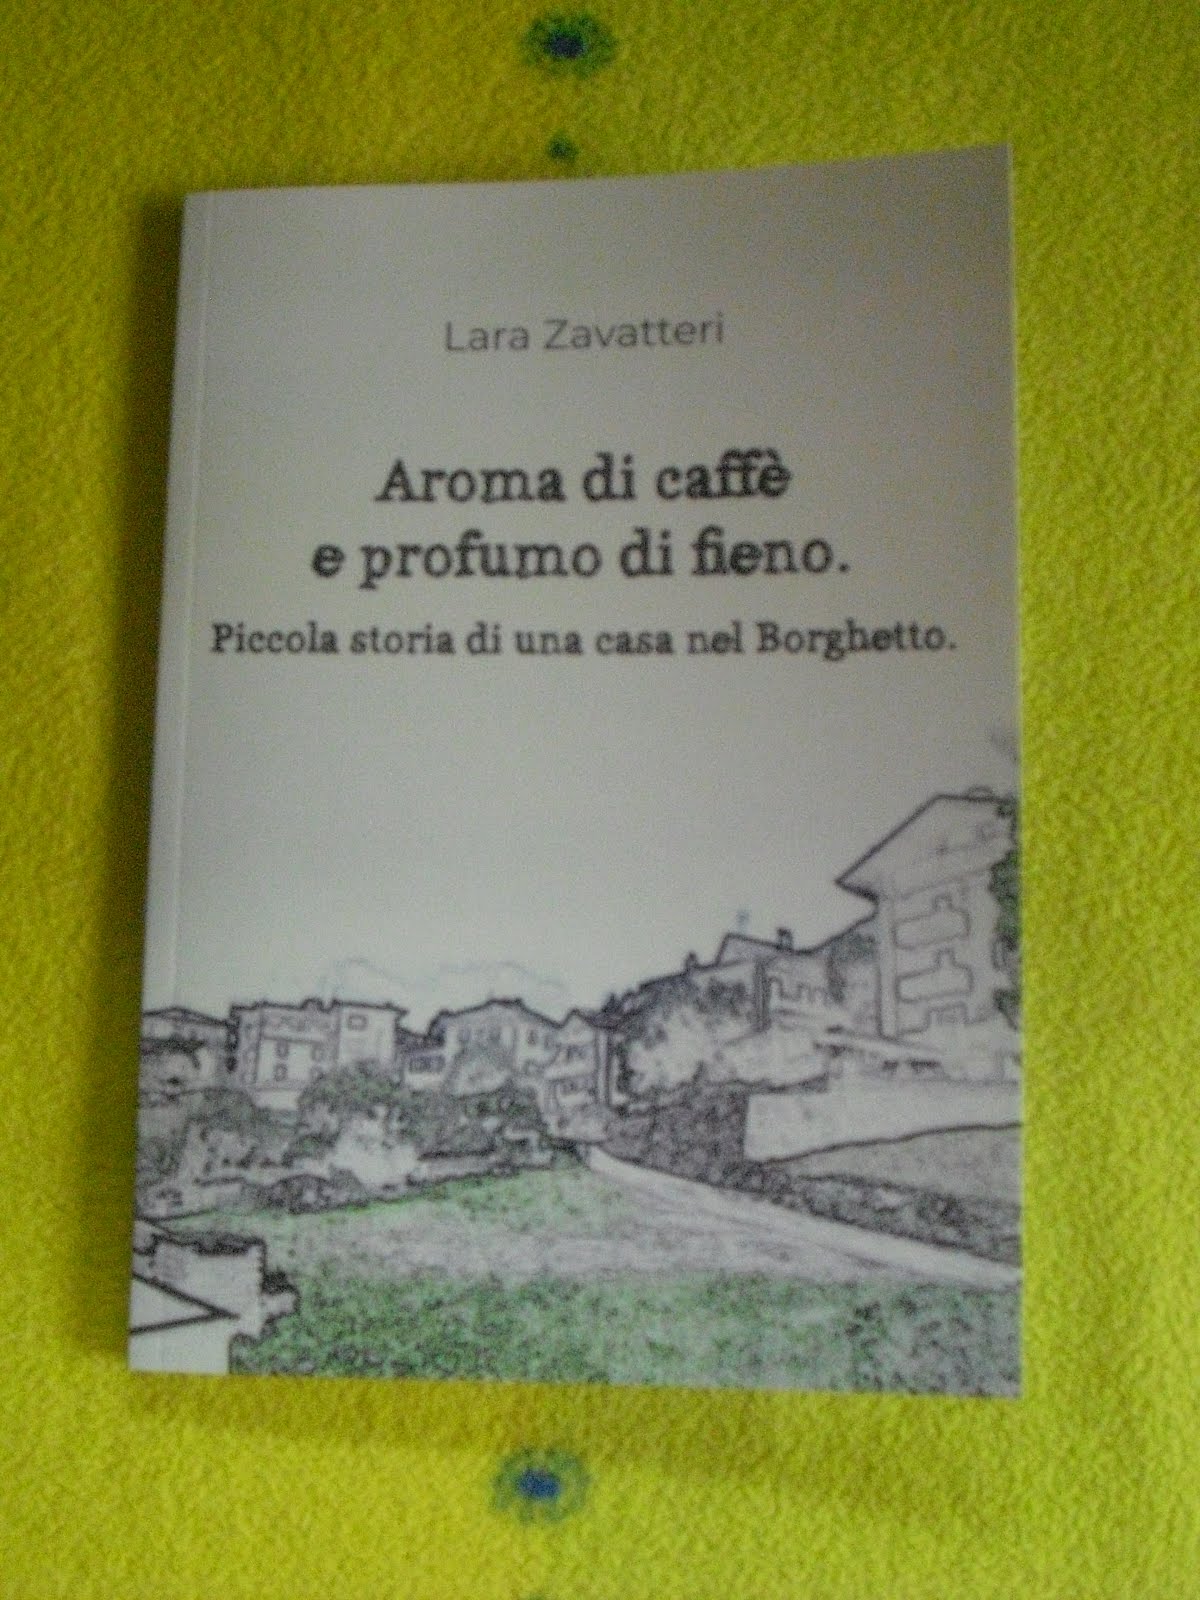 Il mio libro "Aroma di caffè e profumo di fieno. Piccola storia di una casa nel Borghetto."